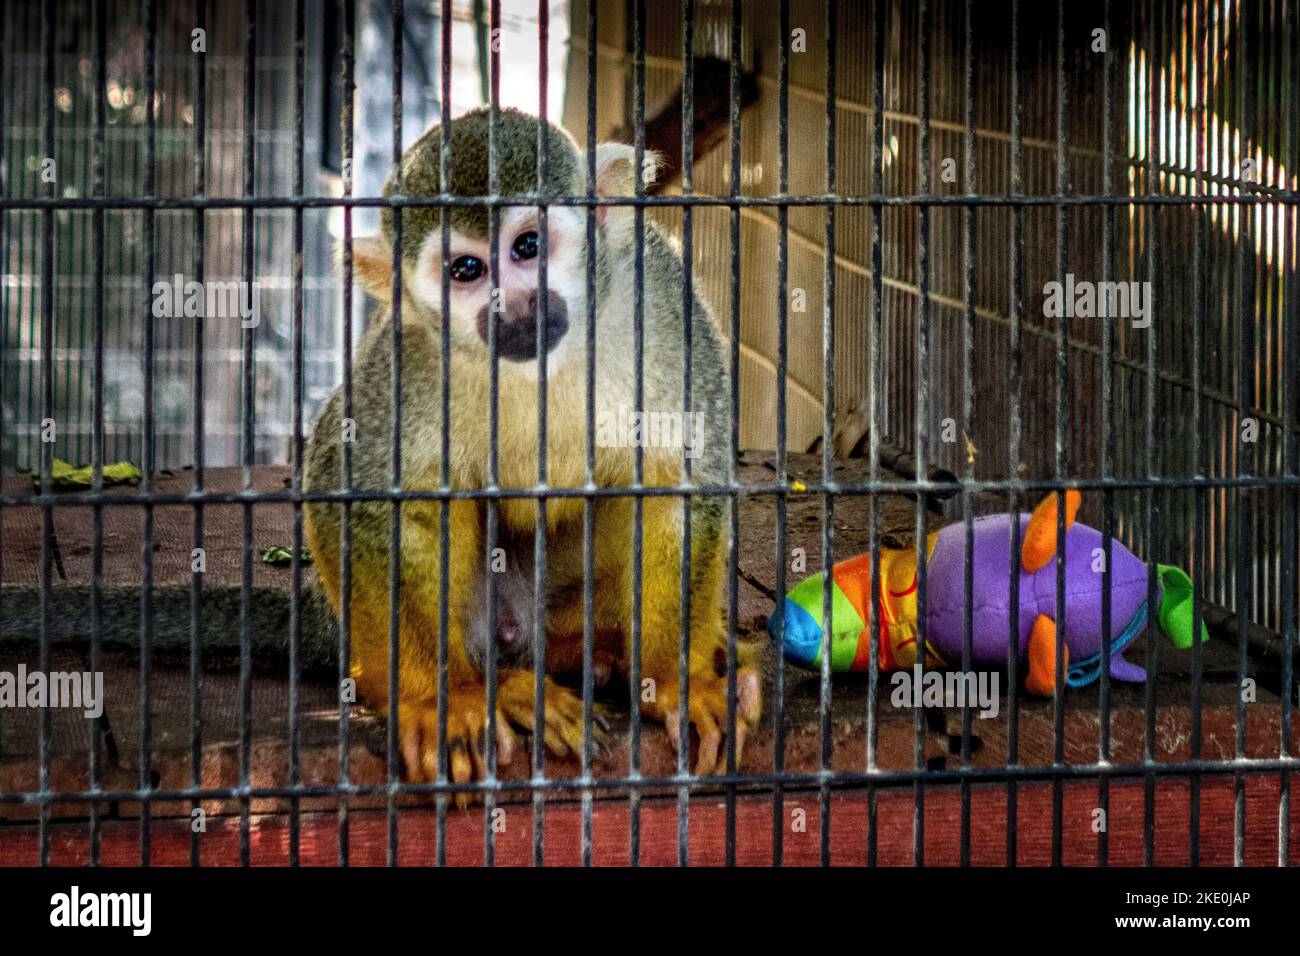 Sad Squirrel Monkey, Salmiri, derrière les barres dans une cage après avoir été secouru. Banque D'Images